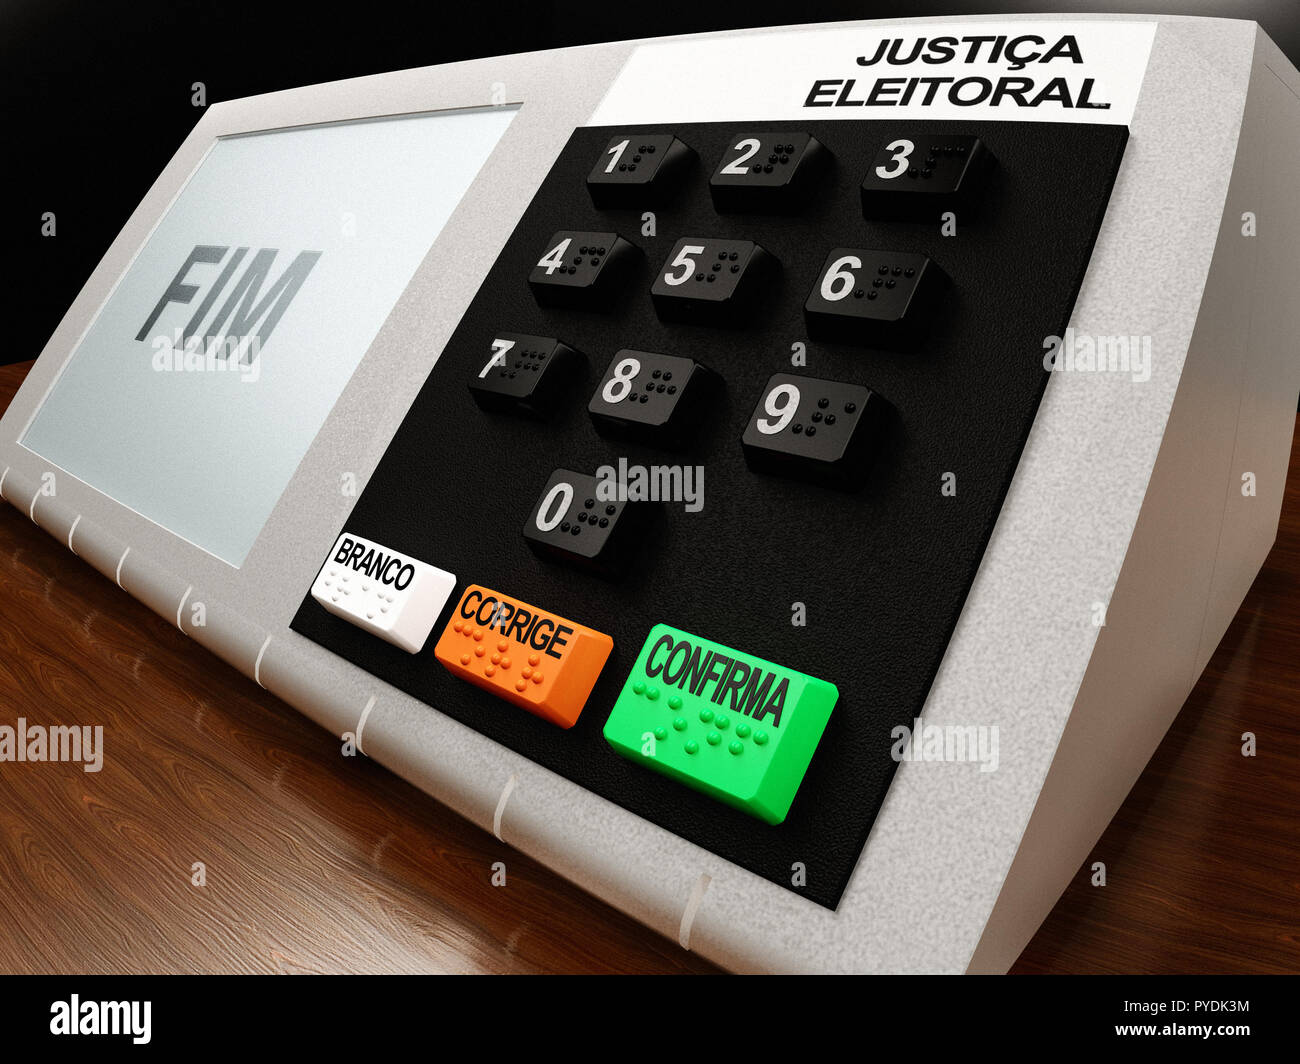 Machine de vote brésilien (urna eletronica) à partir de 2018 l'élection présidentielle au Brésil, avec la FIM (fin) affiché sur l'écran LCD. Banque D'Images